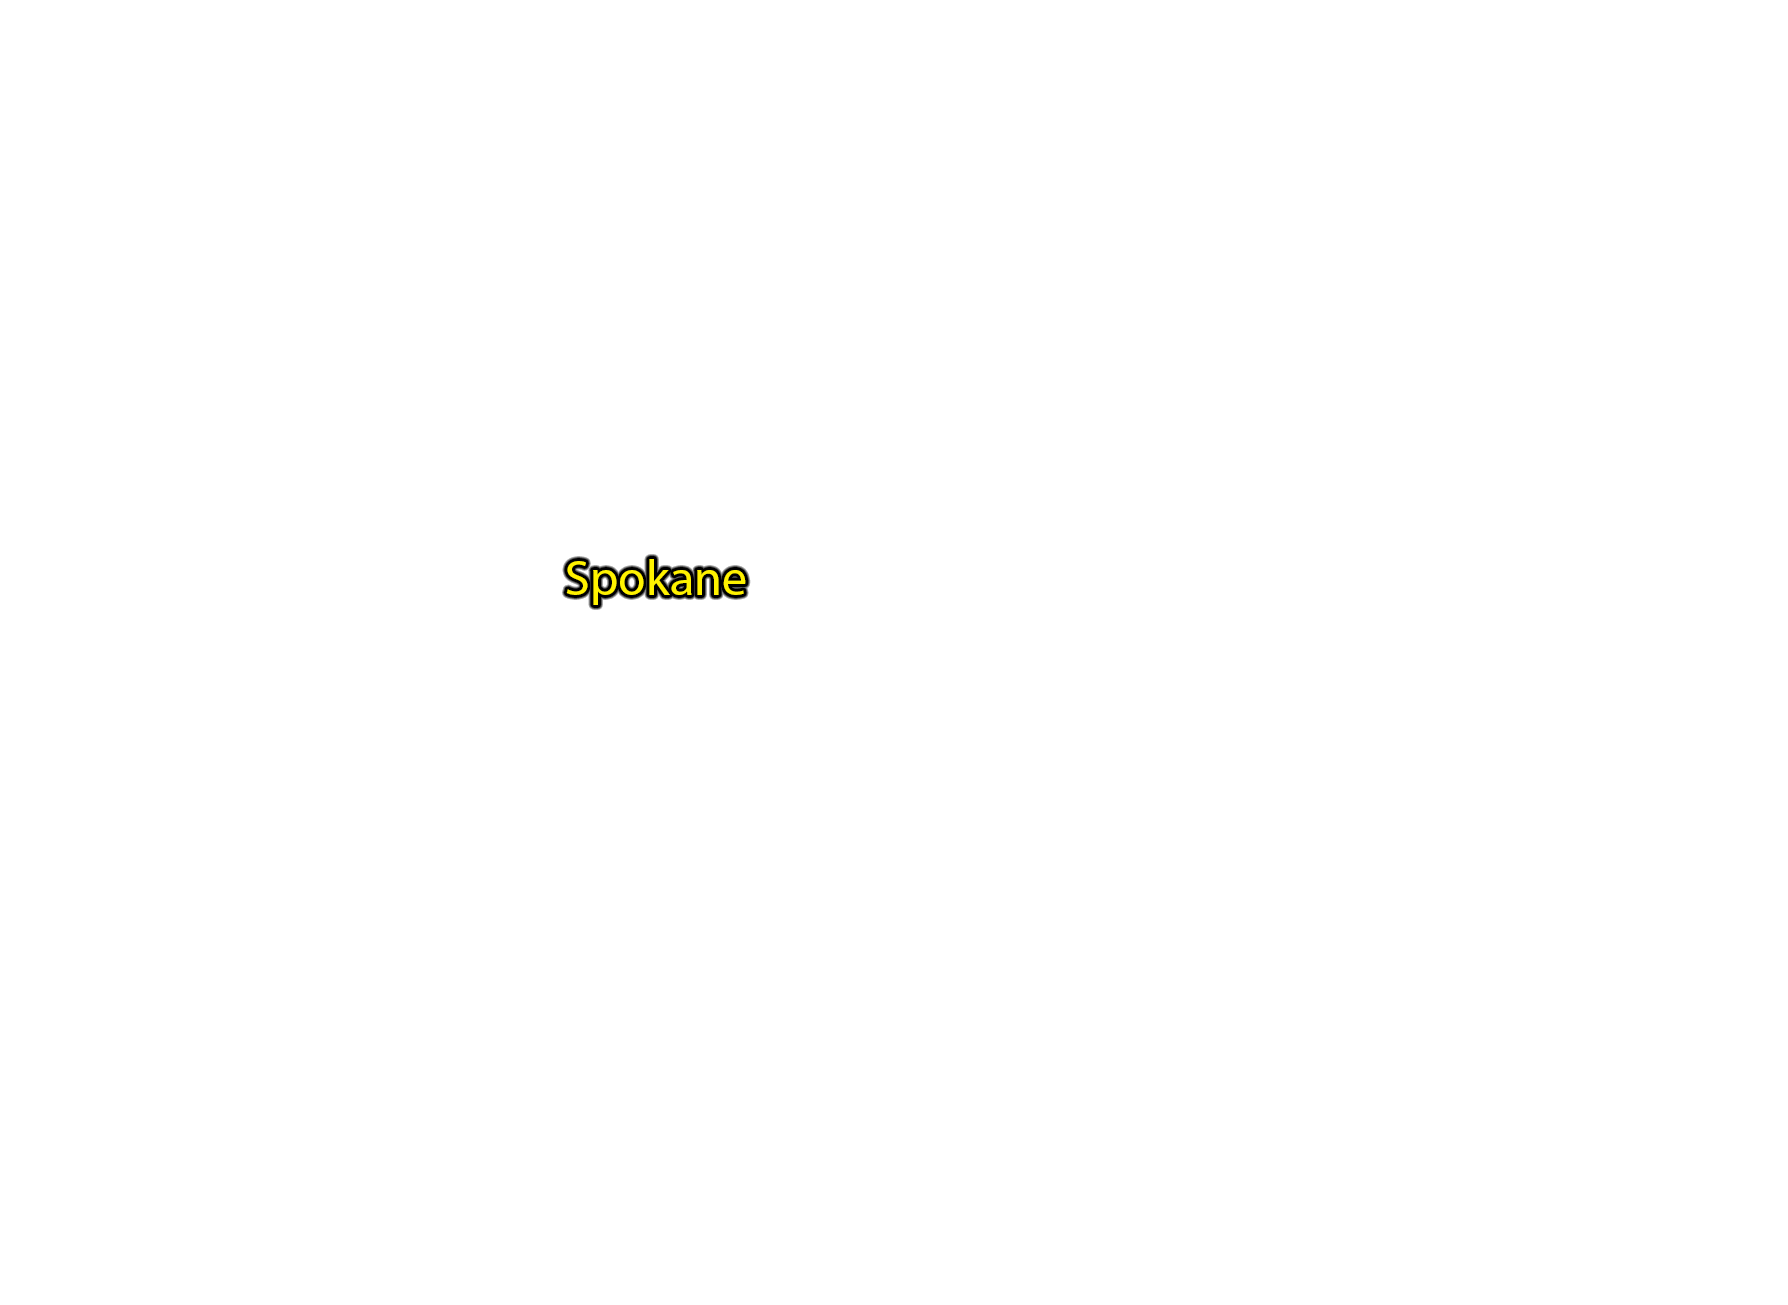 Spokane label with glow